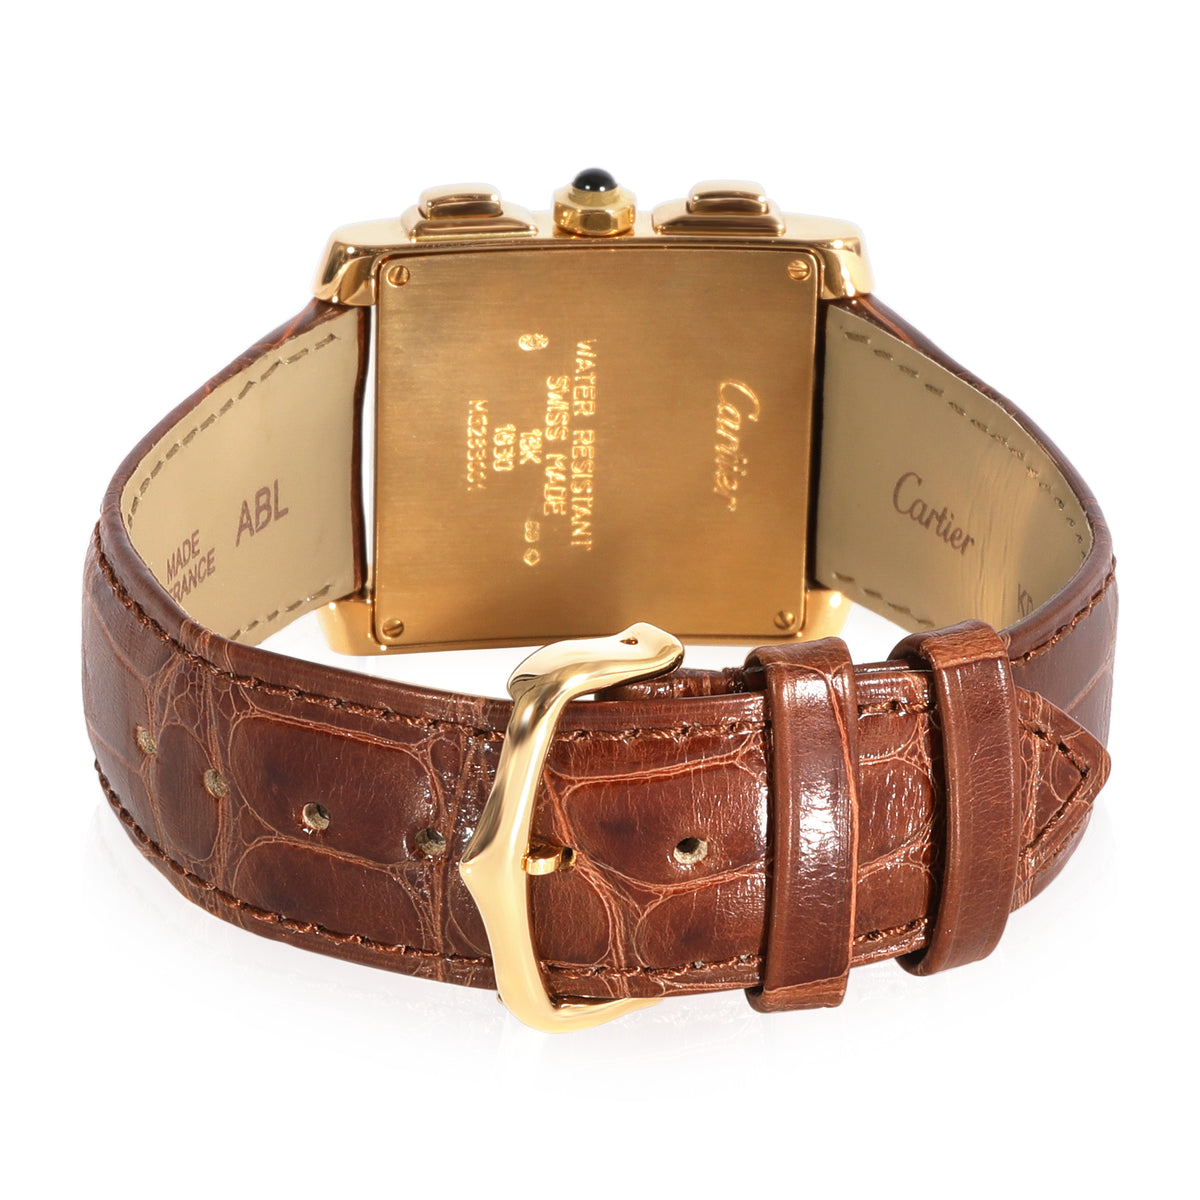 Cartier Tank Francaise Chronoflex W500556 Men's Watch in 18kt Yellow Gold